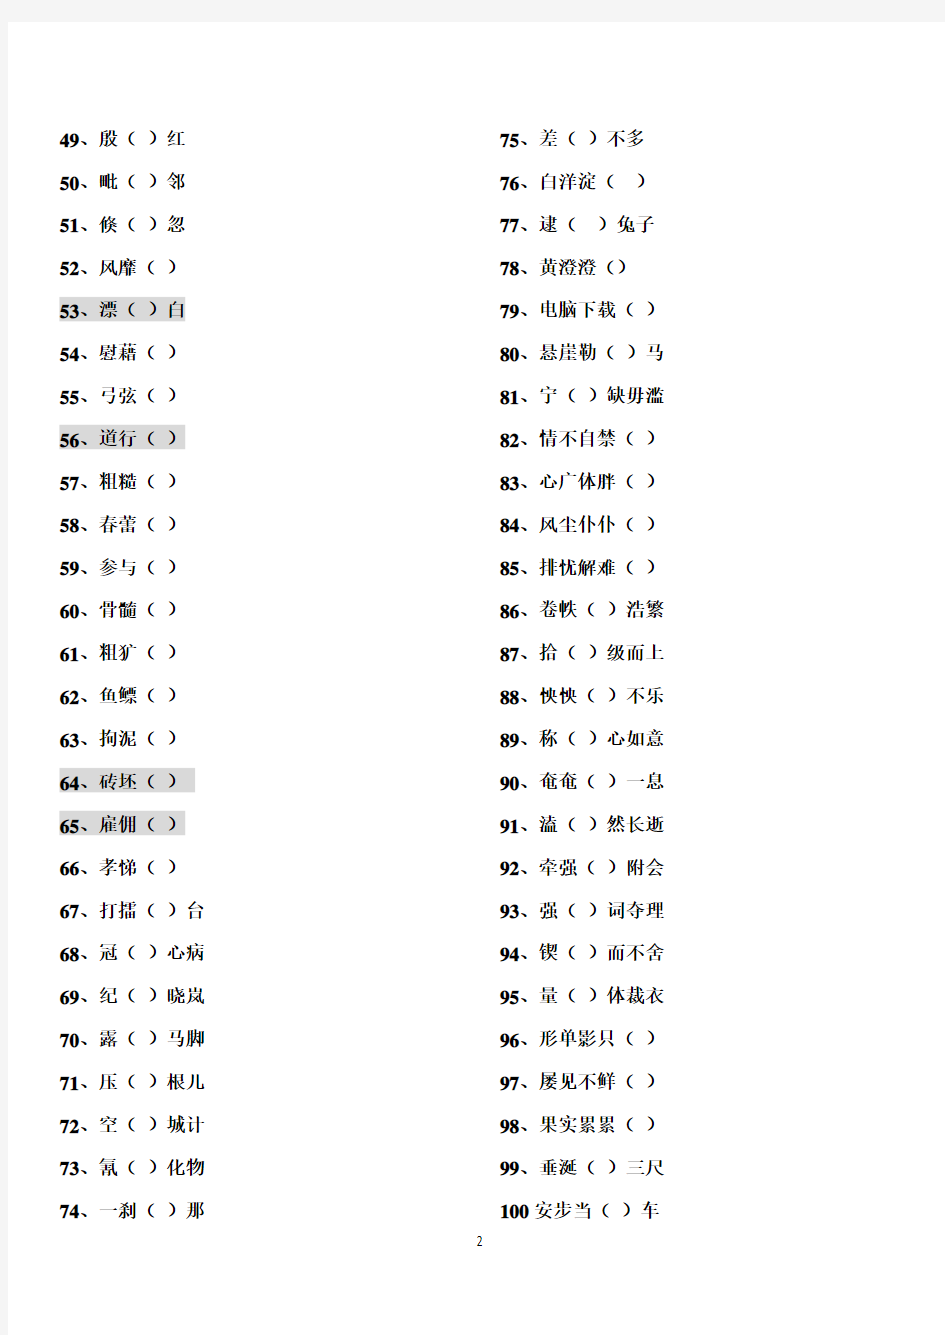 【中国人必看】100个容易读错的汉字和100个容易写错的汉字